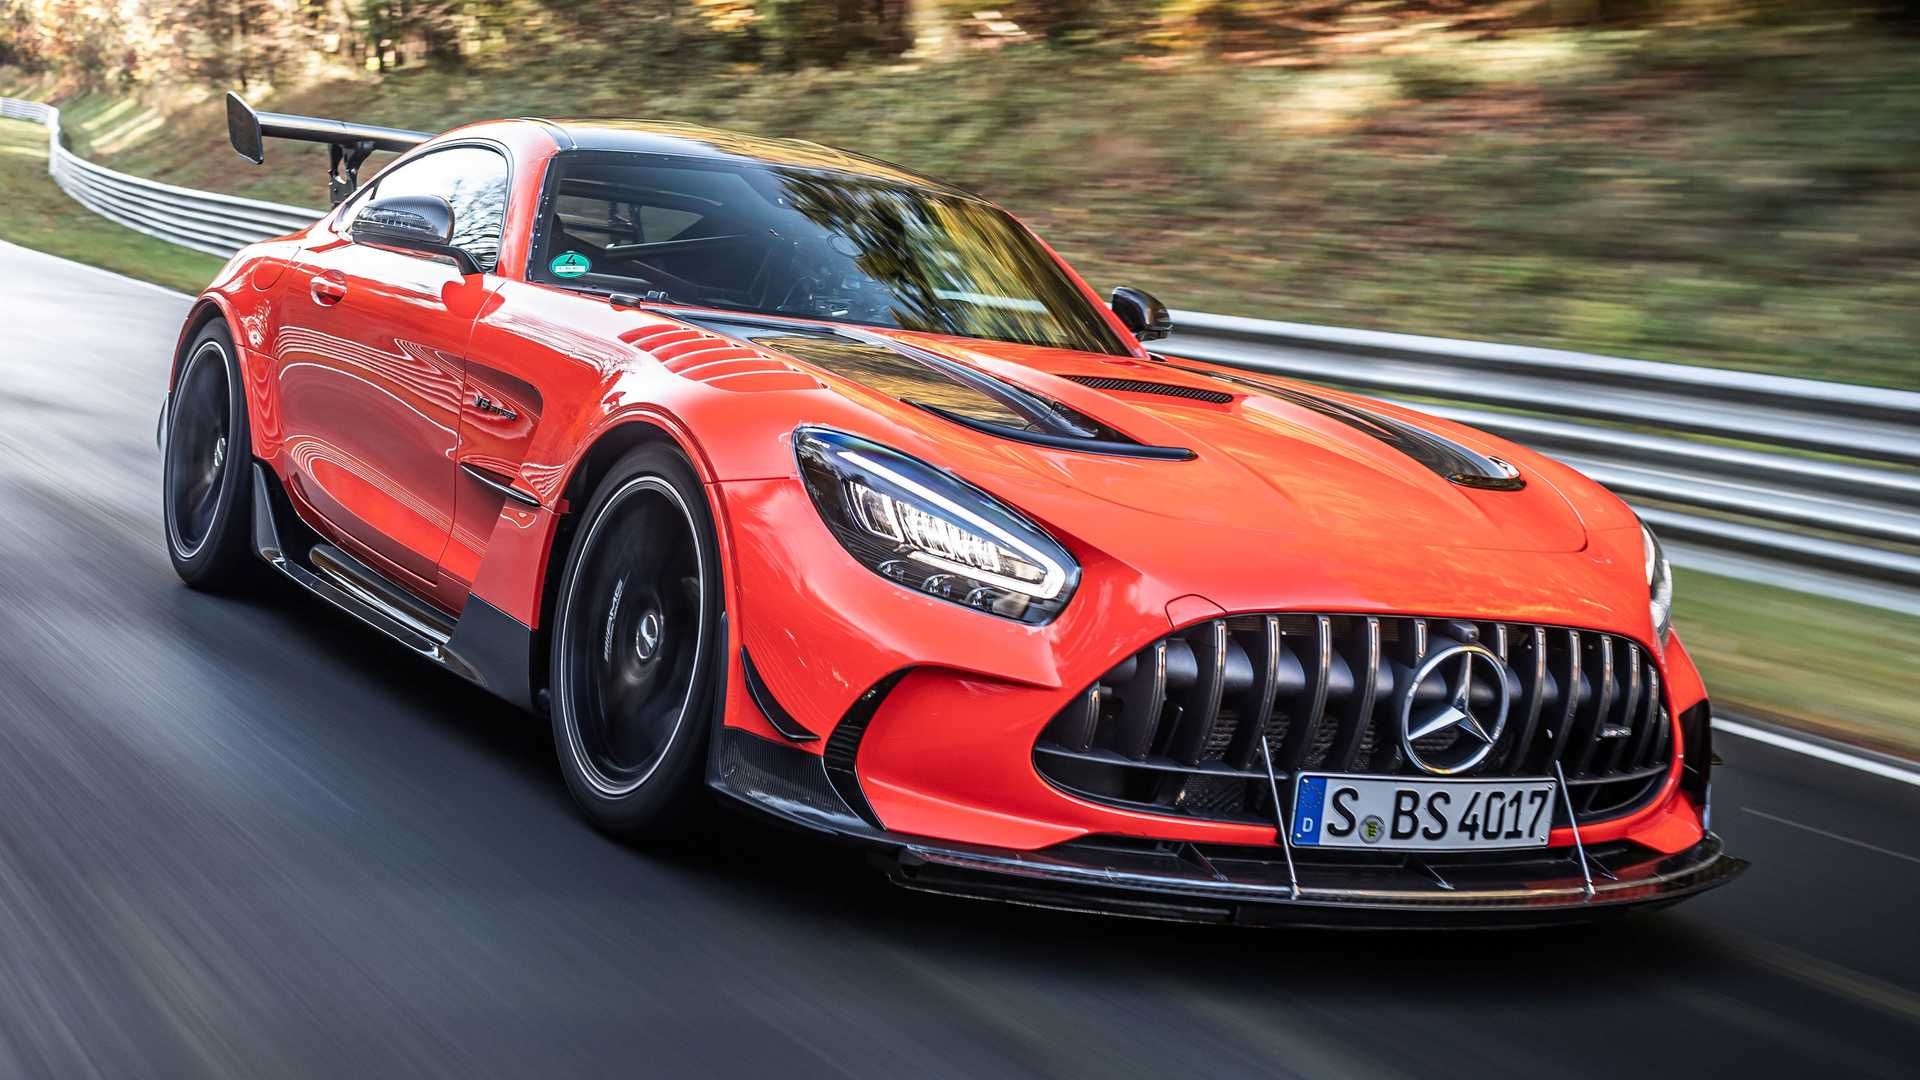 مرجع متخصصين ايران خودرو كوپه مرسدس آ ام گ جي تي سري سياه / Mercedes-AMG GT Black Series نارنجي رنگ در پيست نوربرگ رينگ